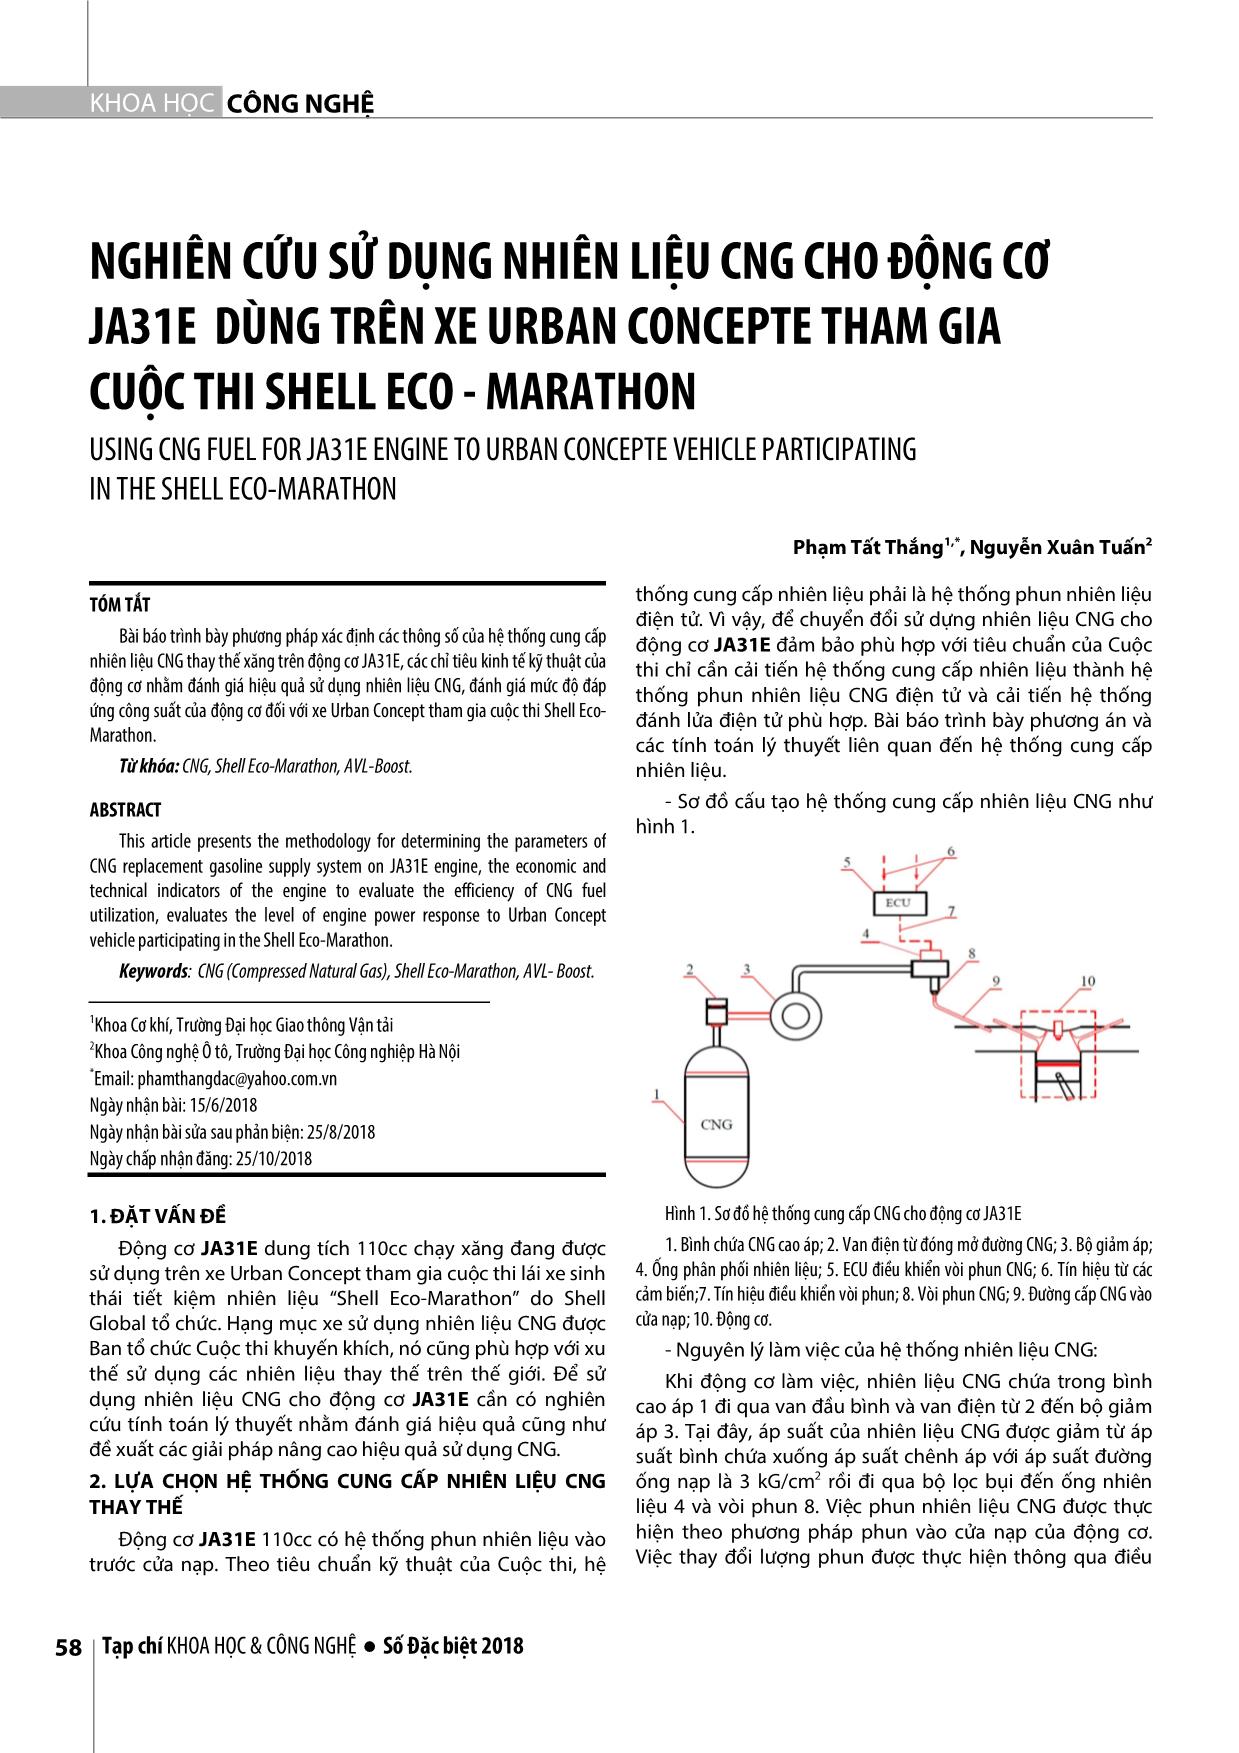 Nghiên cứu sử dụng nhiên liệu CNG cho động cơ ja31e dùng trên xe urban concepte tham gia cuộc thi shell eco - Marathon trang 1